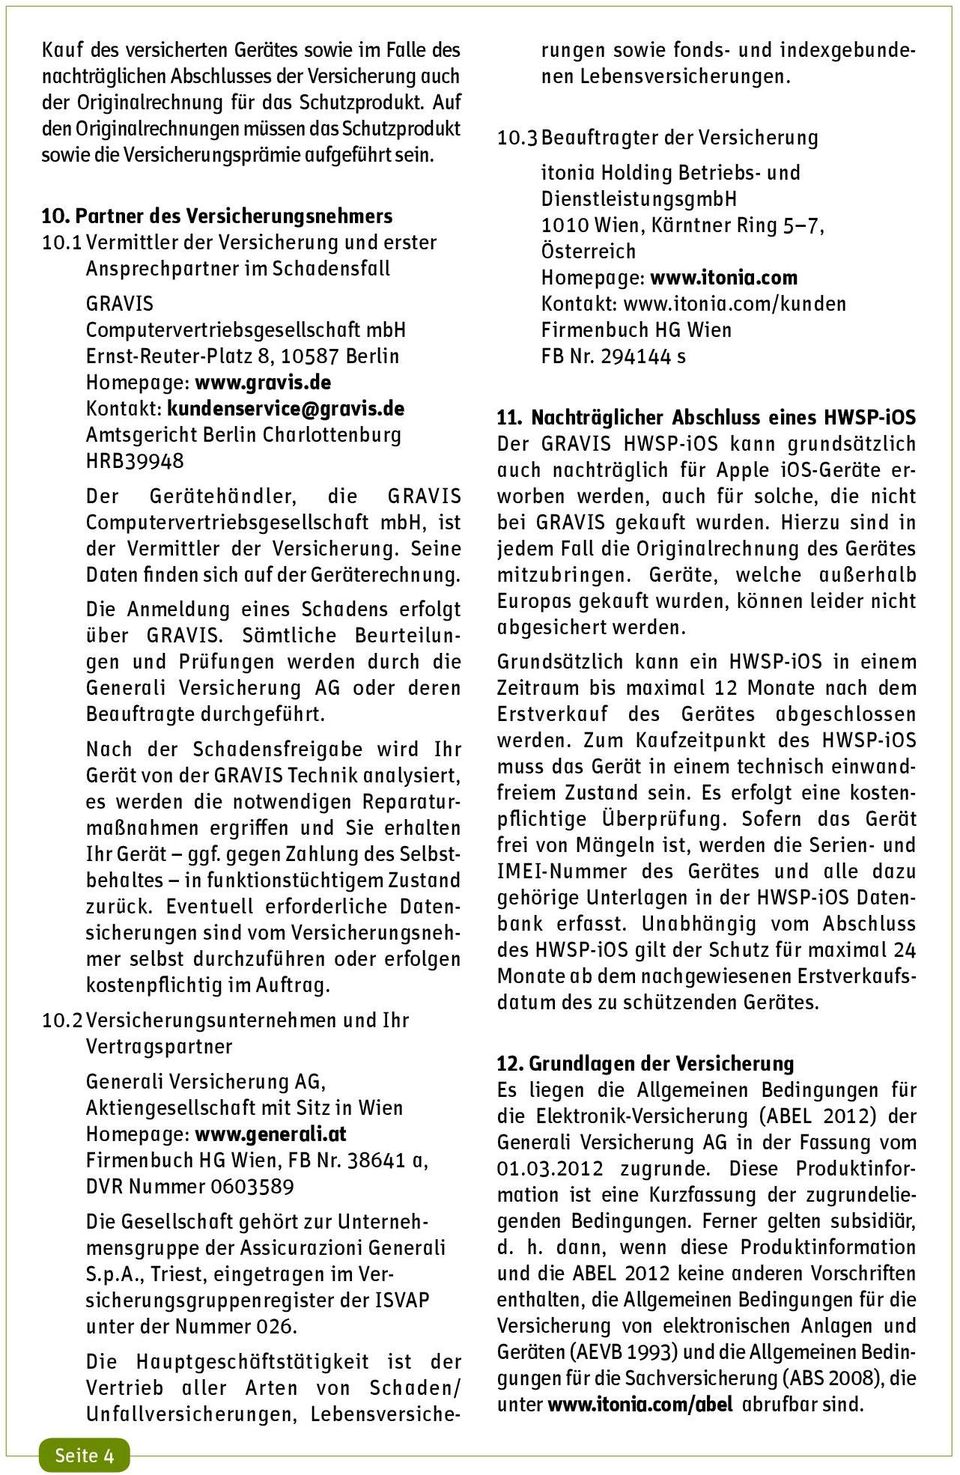 1 Vermittler der Versicherung und erster Ansprechpartner im Schadensfall GRAVIS Computervertriebsgesellschaft mbh Ernst-Reuter-Platz 8, 10587 Berlin Homepage: www.gravis.